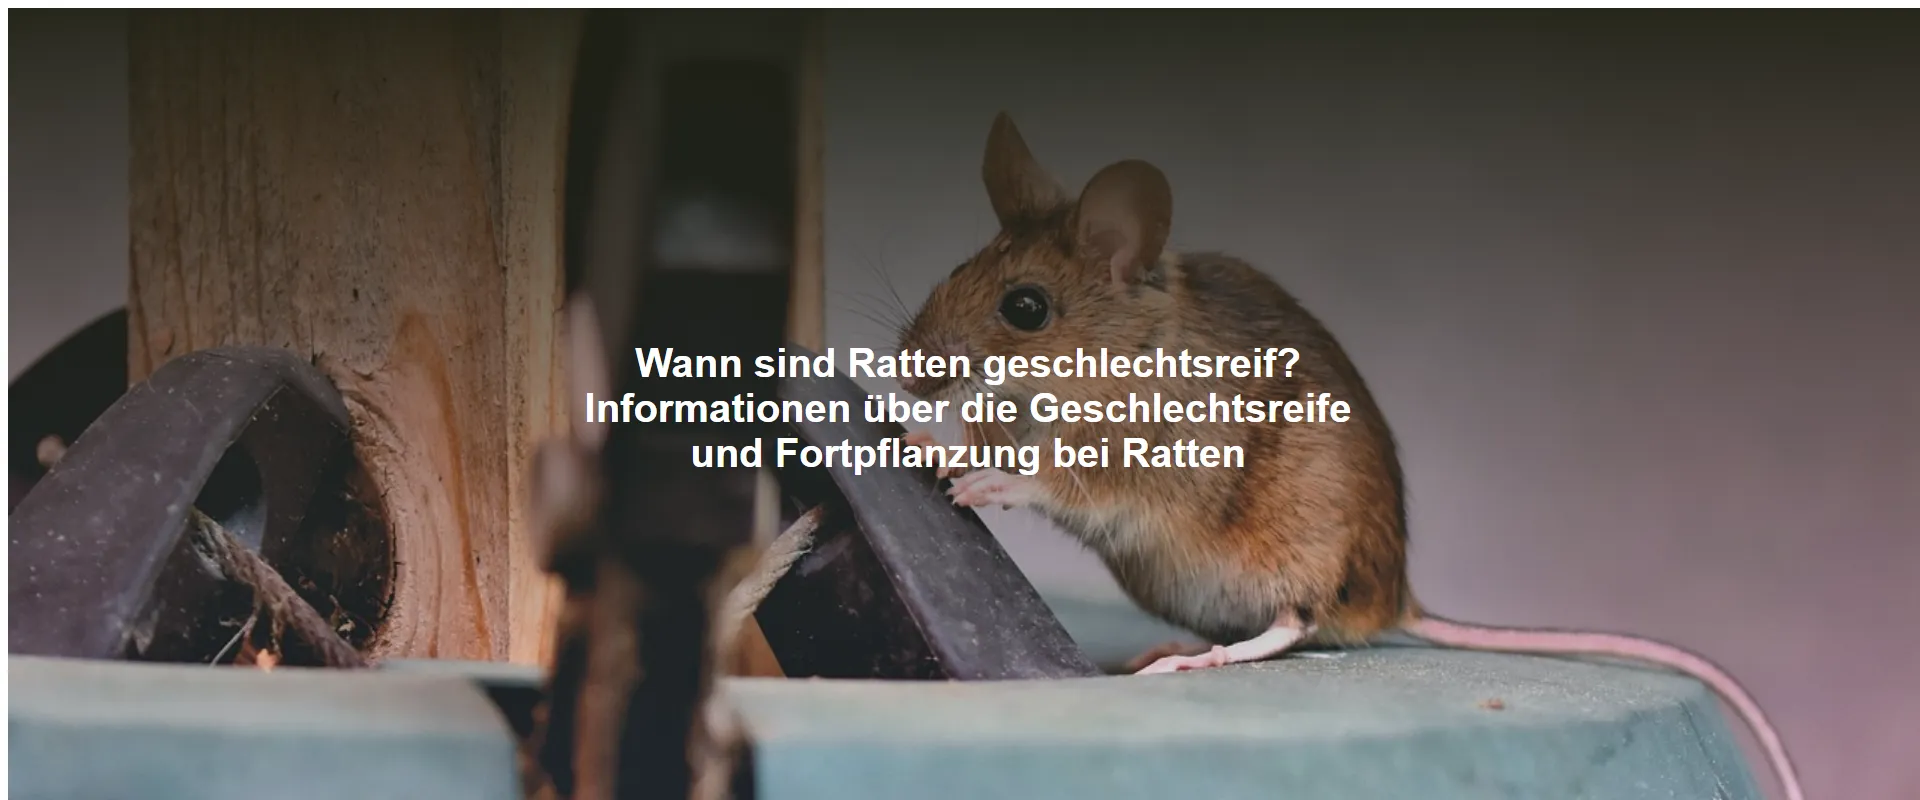 Wann sind Ratten geschlechtsreif? Informationen über die Geschlechtsreife und Fortpflanzung bei Ratten